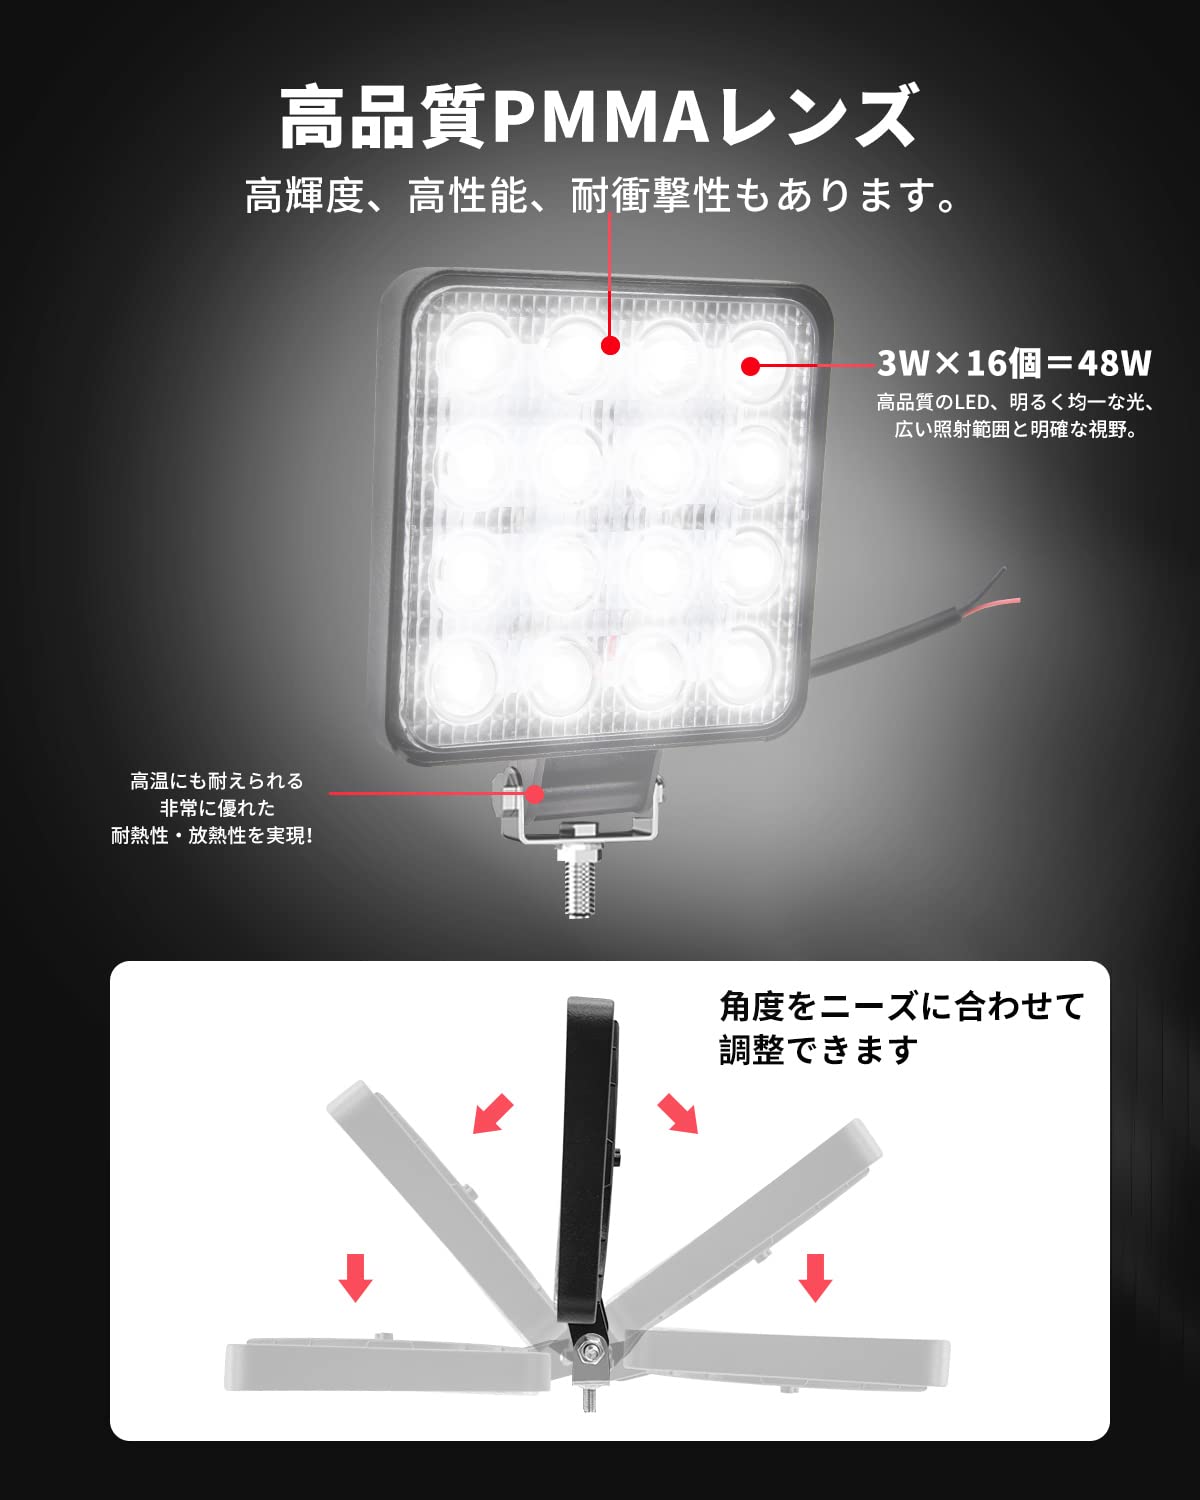 6台MISHIMA ライトバー 前照灯 120ｗ オスラム製ledチップ ledライト 作業灯 led 12v 広角狭角兼用 混合光 LED - 2